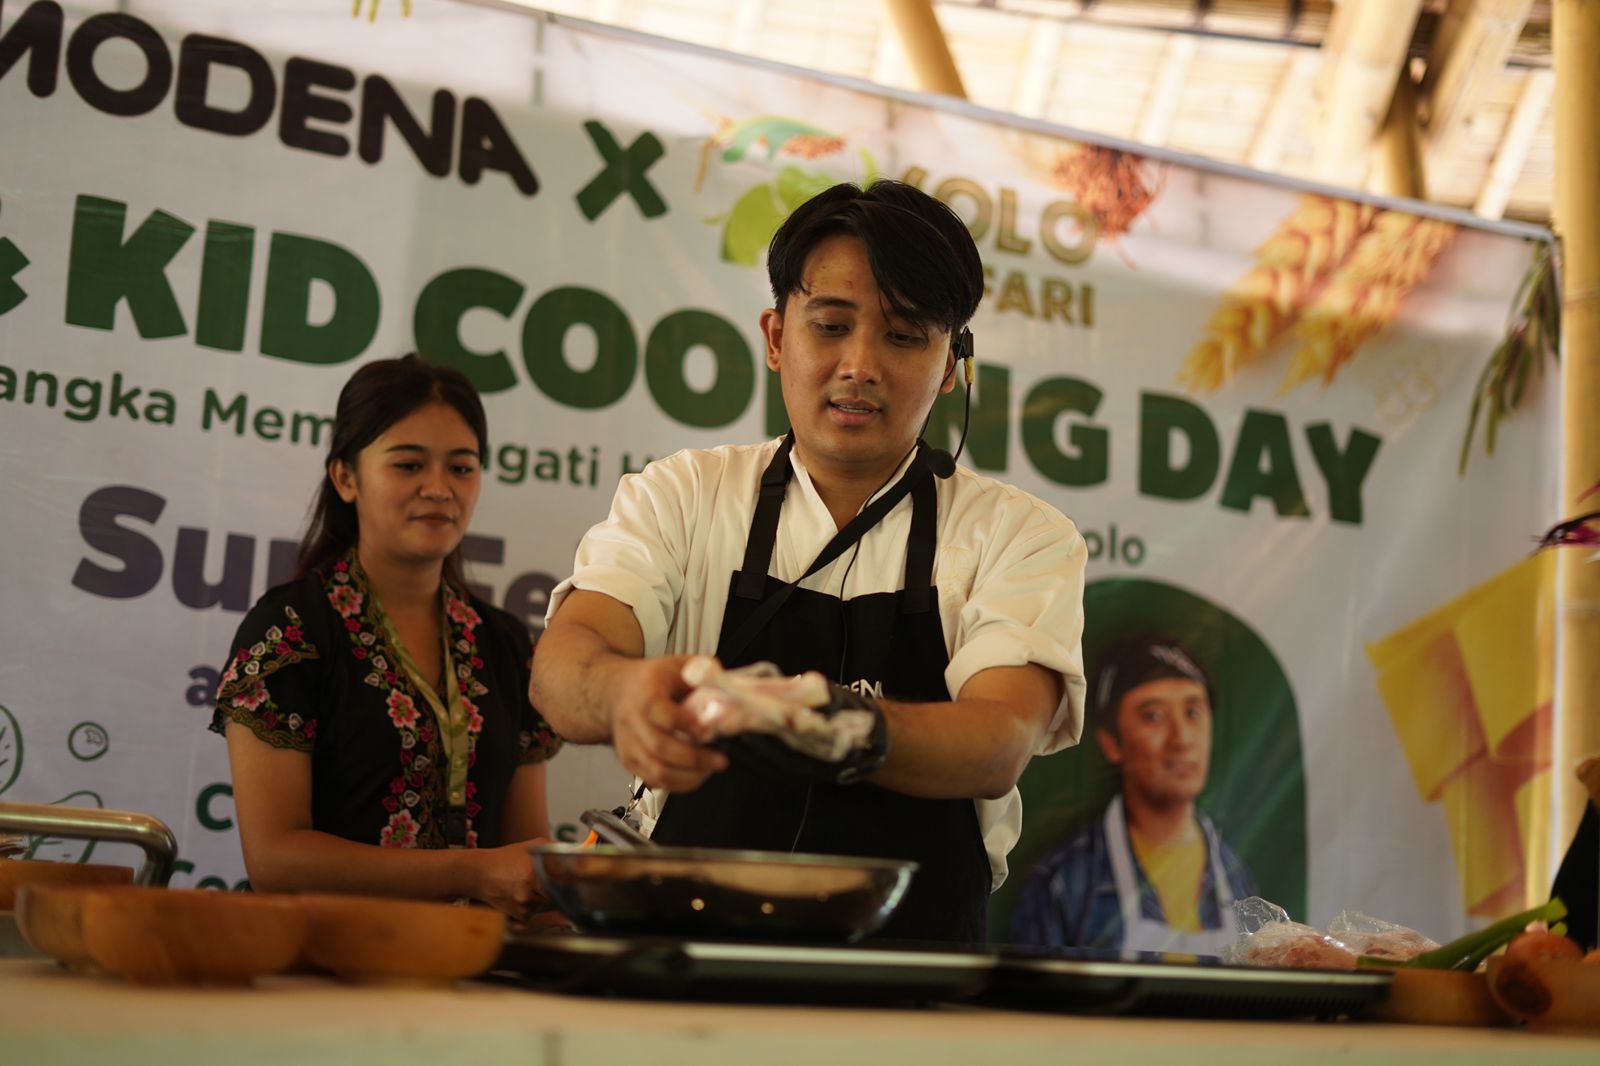 Solo Safari Hadirkan Celebrity Chef di Acara Mom & Kid Cooking Day  Perayaan Acara Hari Jadi ke-279 Kota Solo